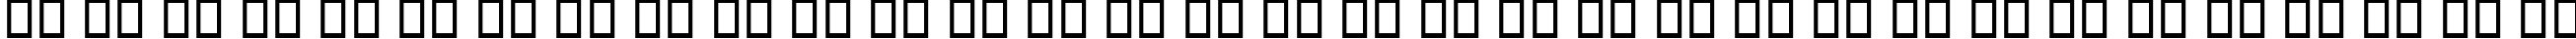 Пример написания русского алфавита шрифтом B Sepideh